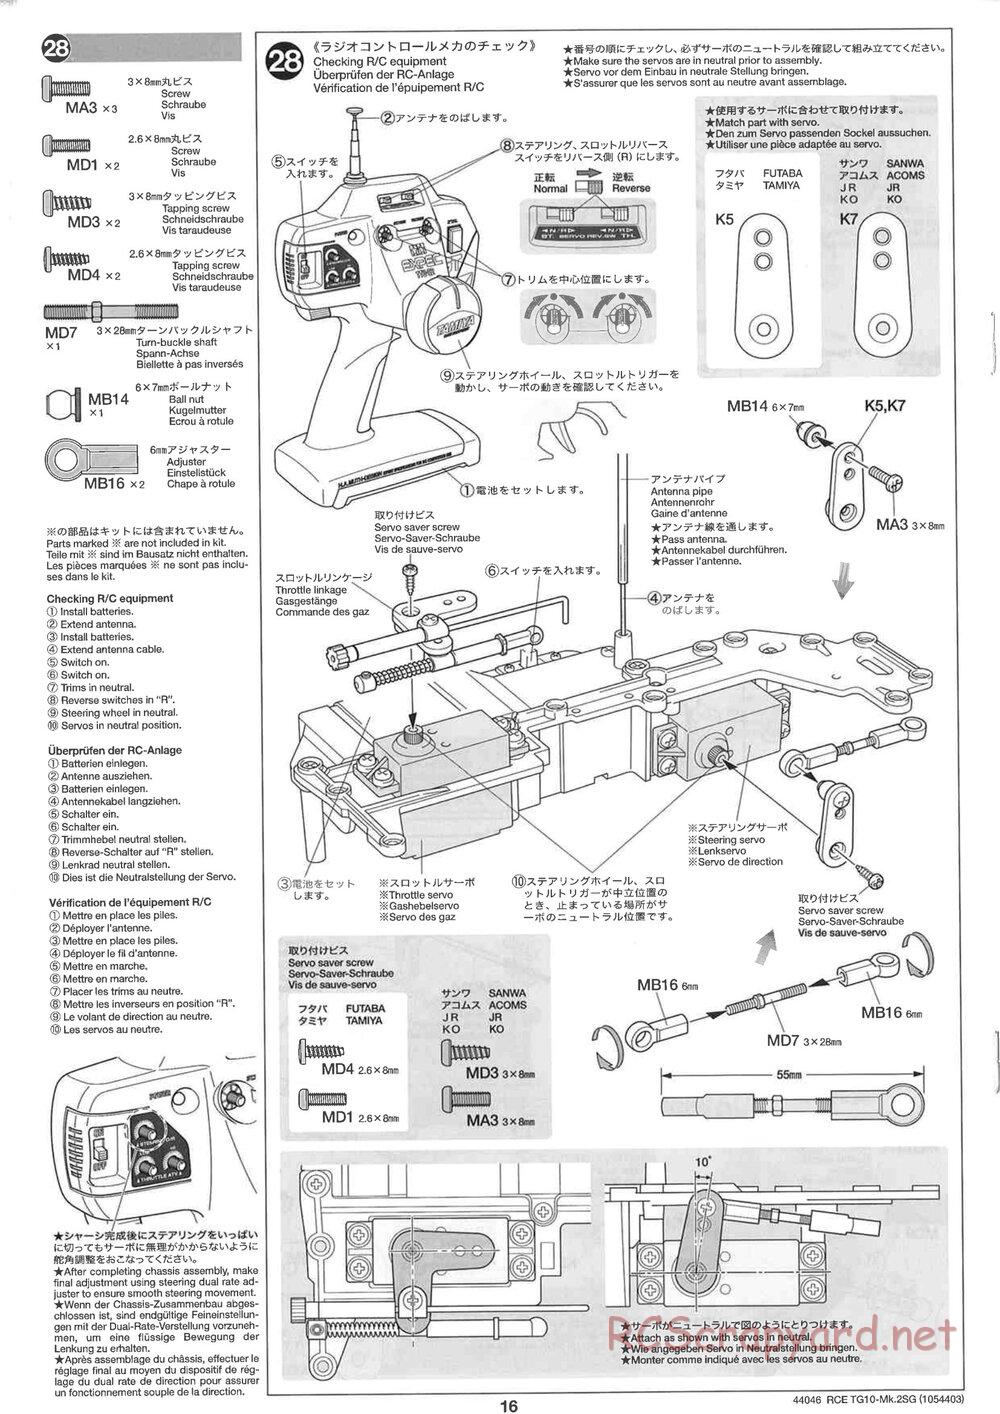 Tamiya - TG10 Mk.2SG Chassis - Manual - Page 16